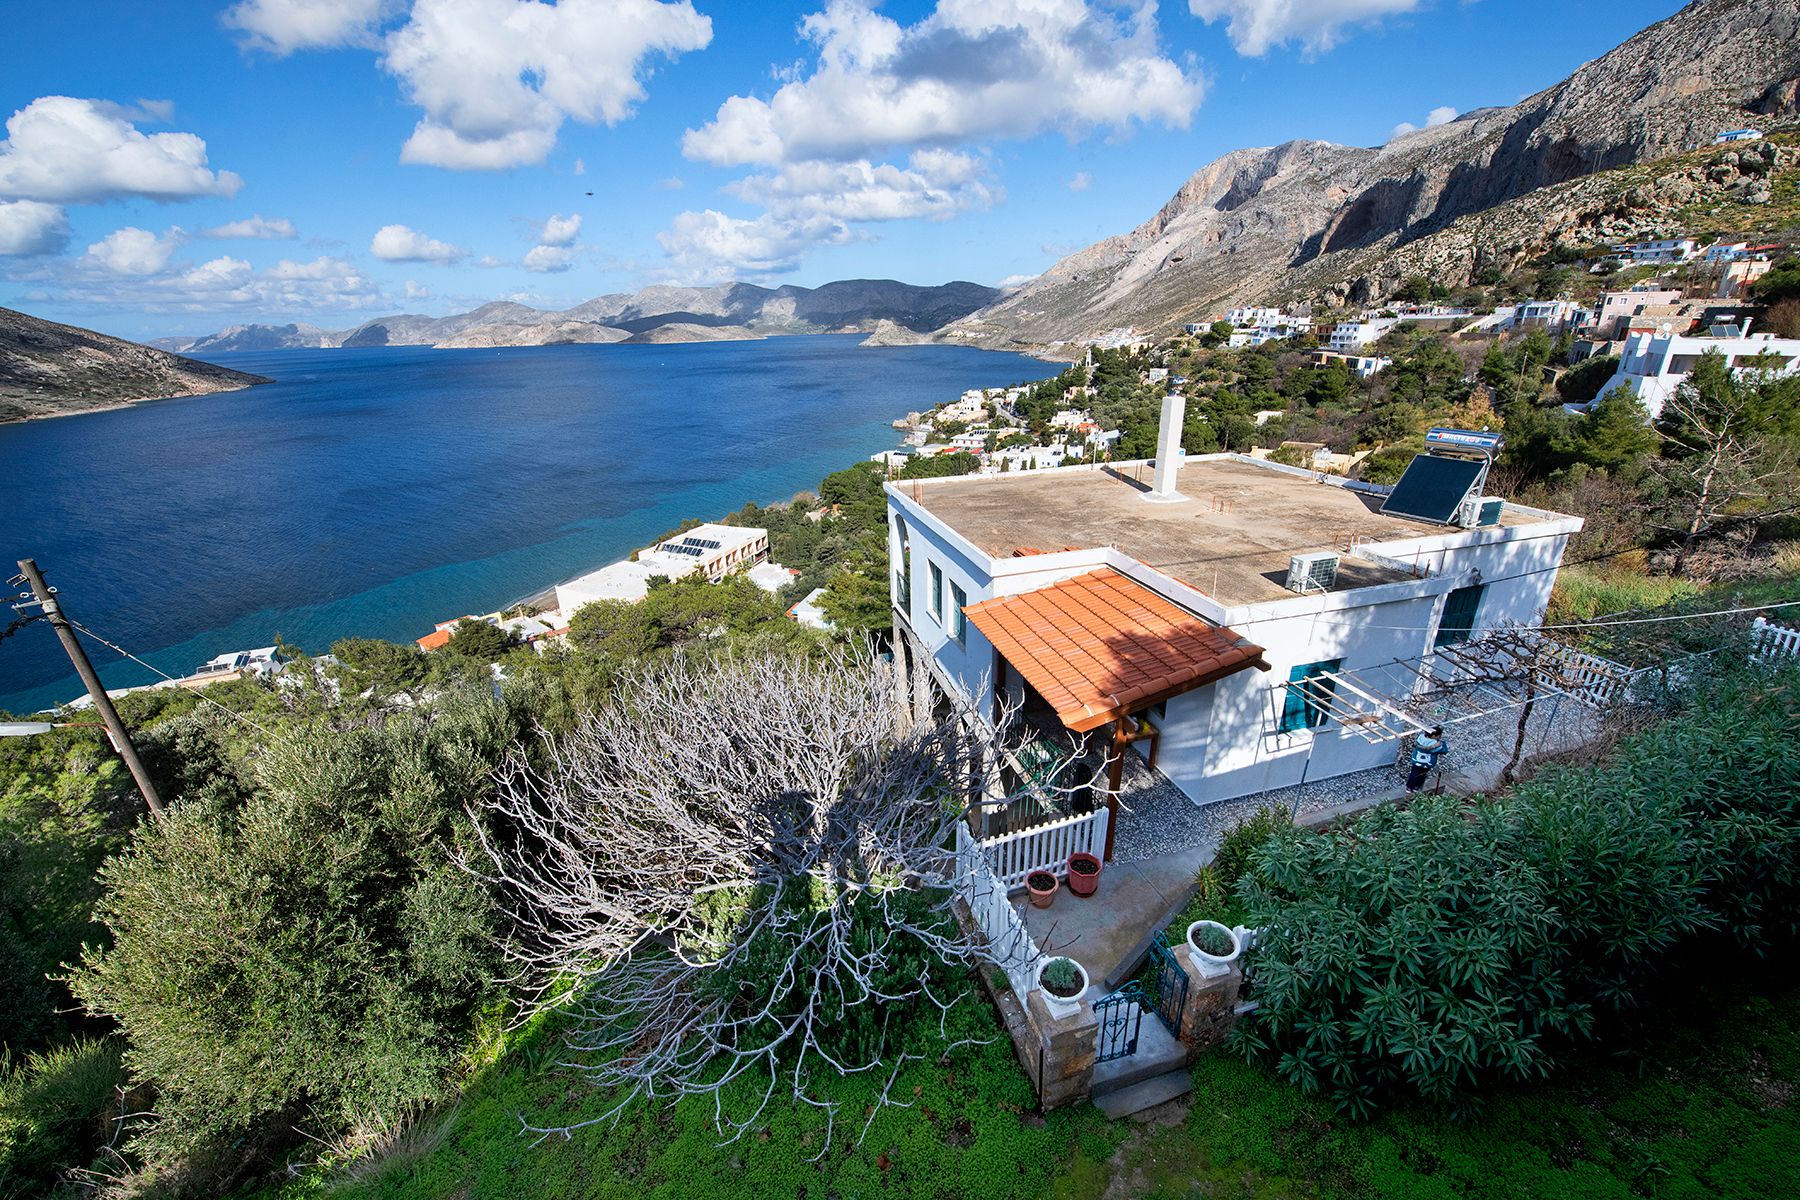 Giameiko Traditional House by Stay in Kalymnos - Μασούρι, Κάλυμνος ✦ 2 Ημέρες (1 Διανυκτέρευση) ✦ 4 άτομα ✦ 1 ✦ έως 30/09/2022 ✦ Μοναδική Θέα!